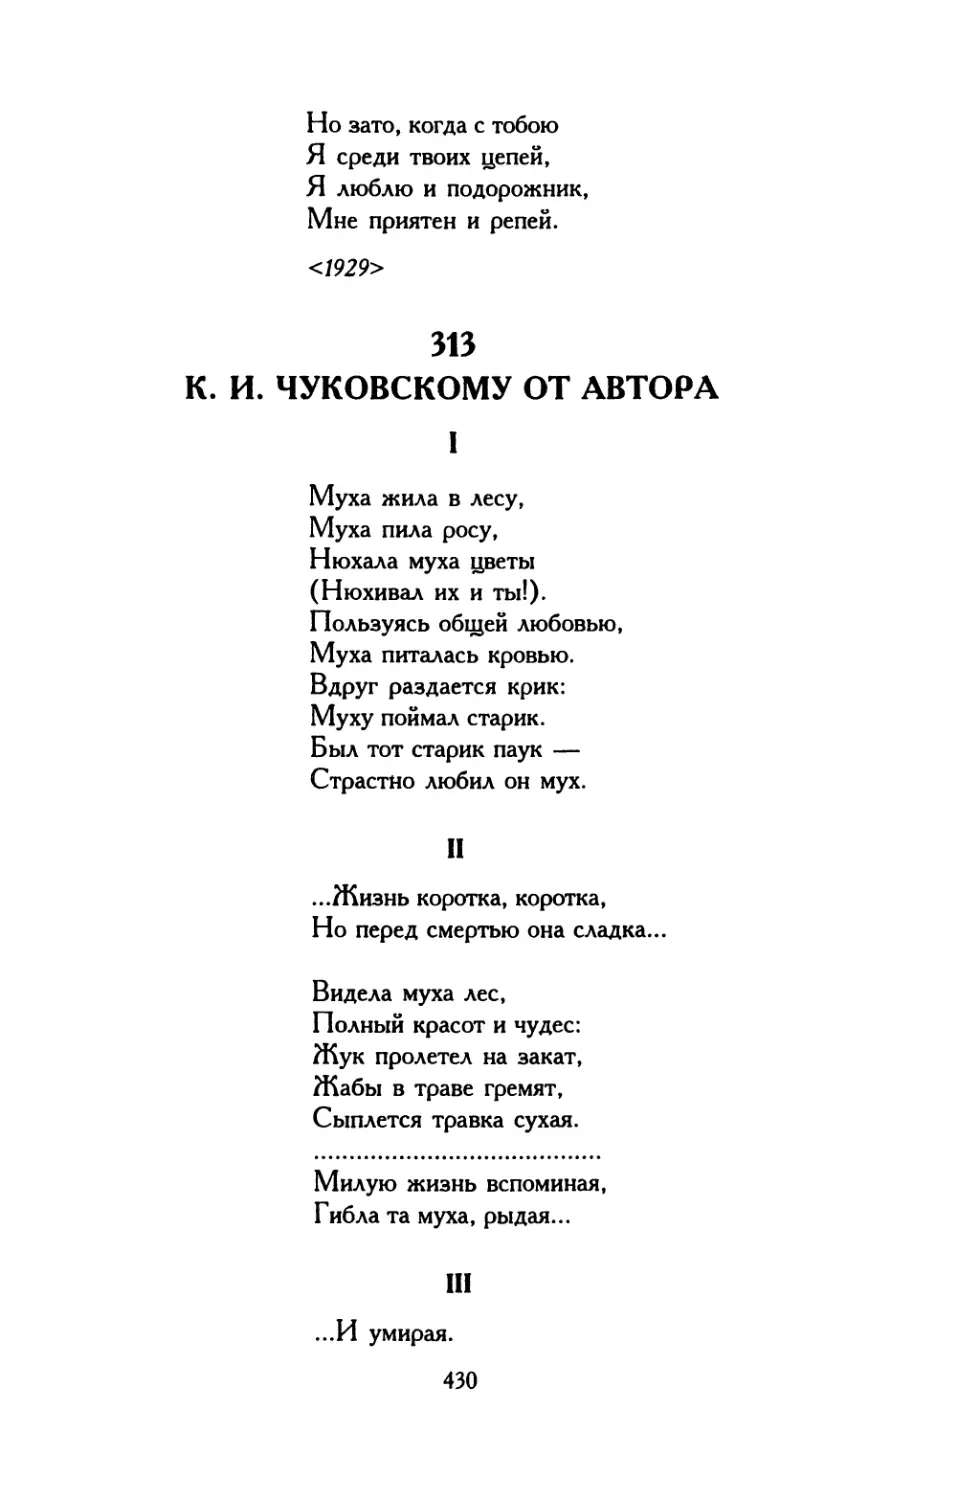 313. К. И. Чуковскому от автора